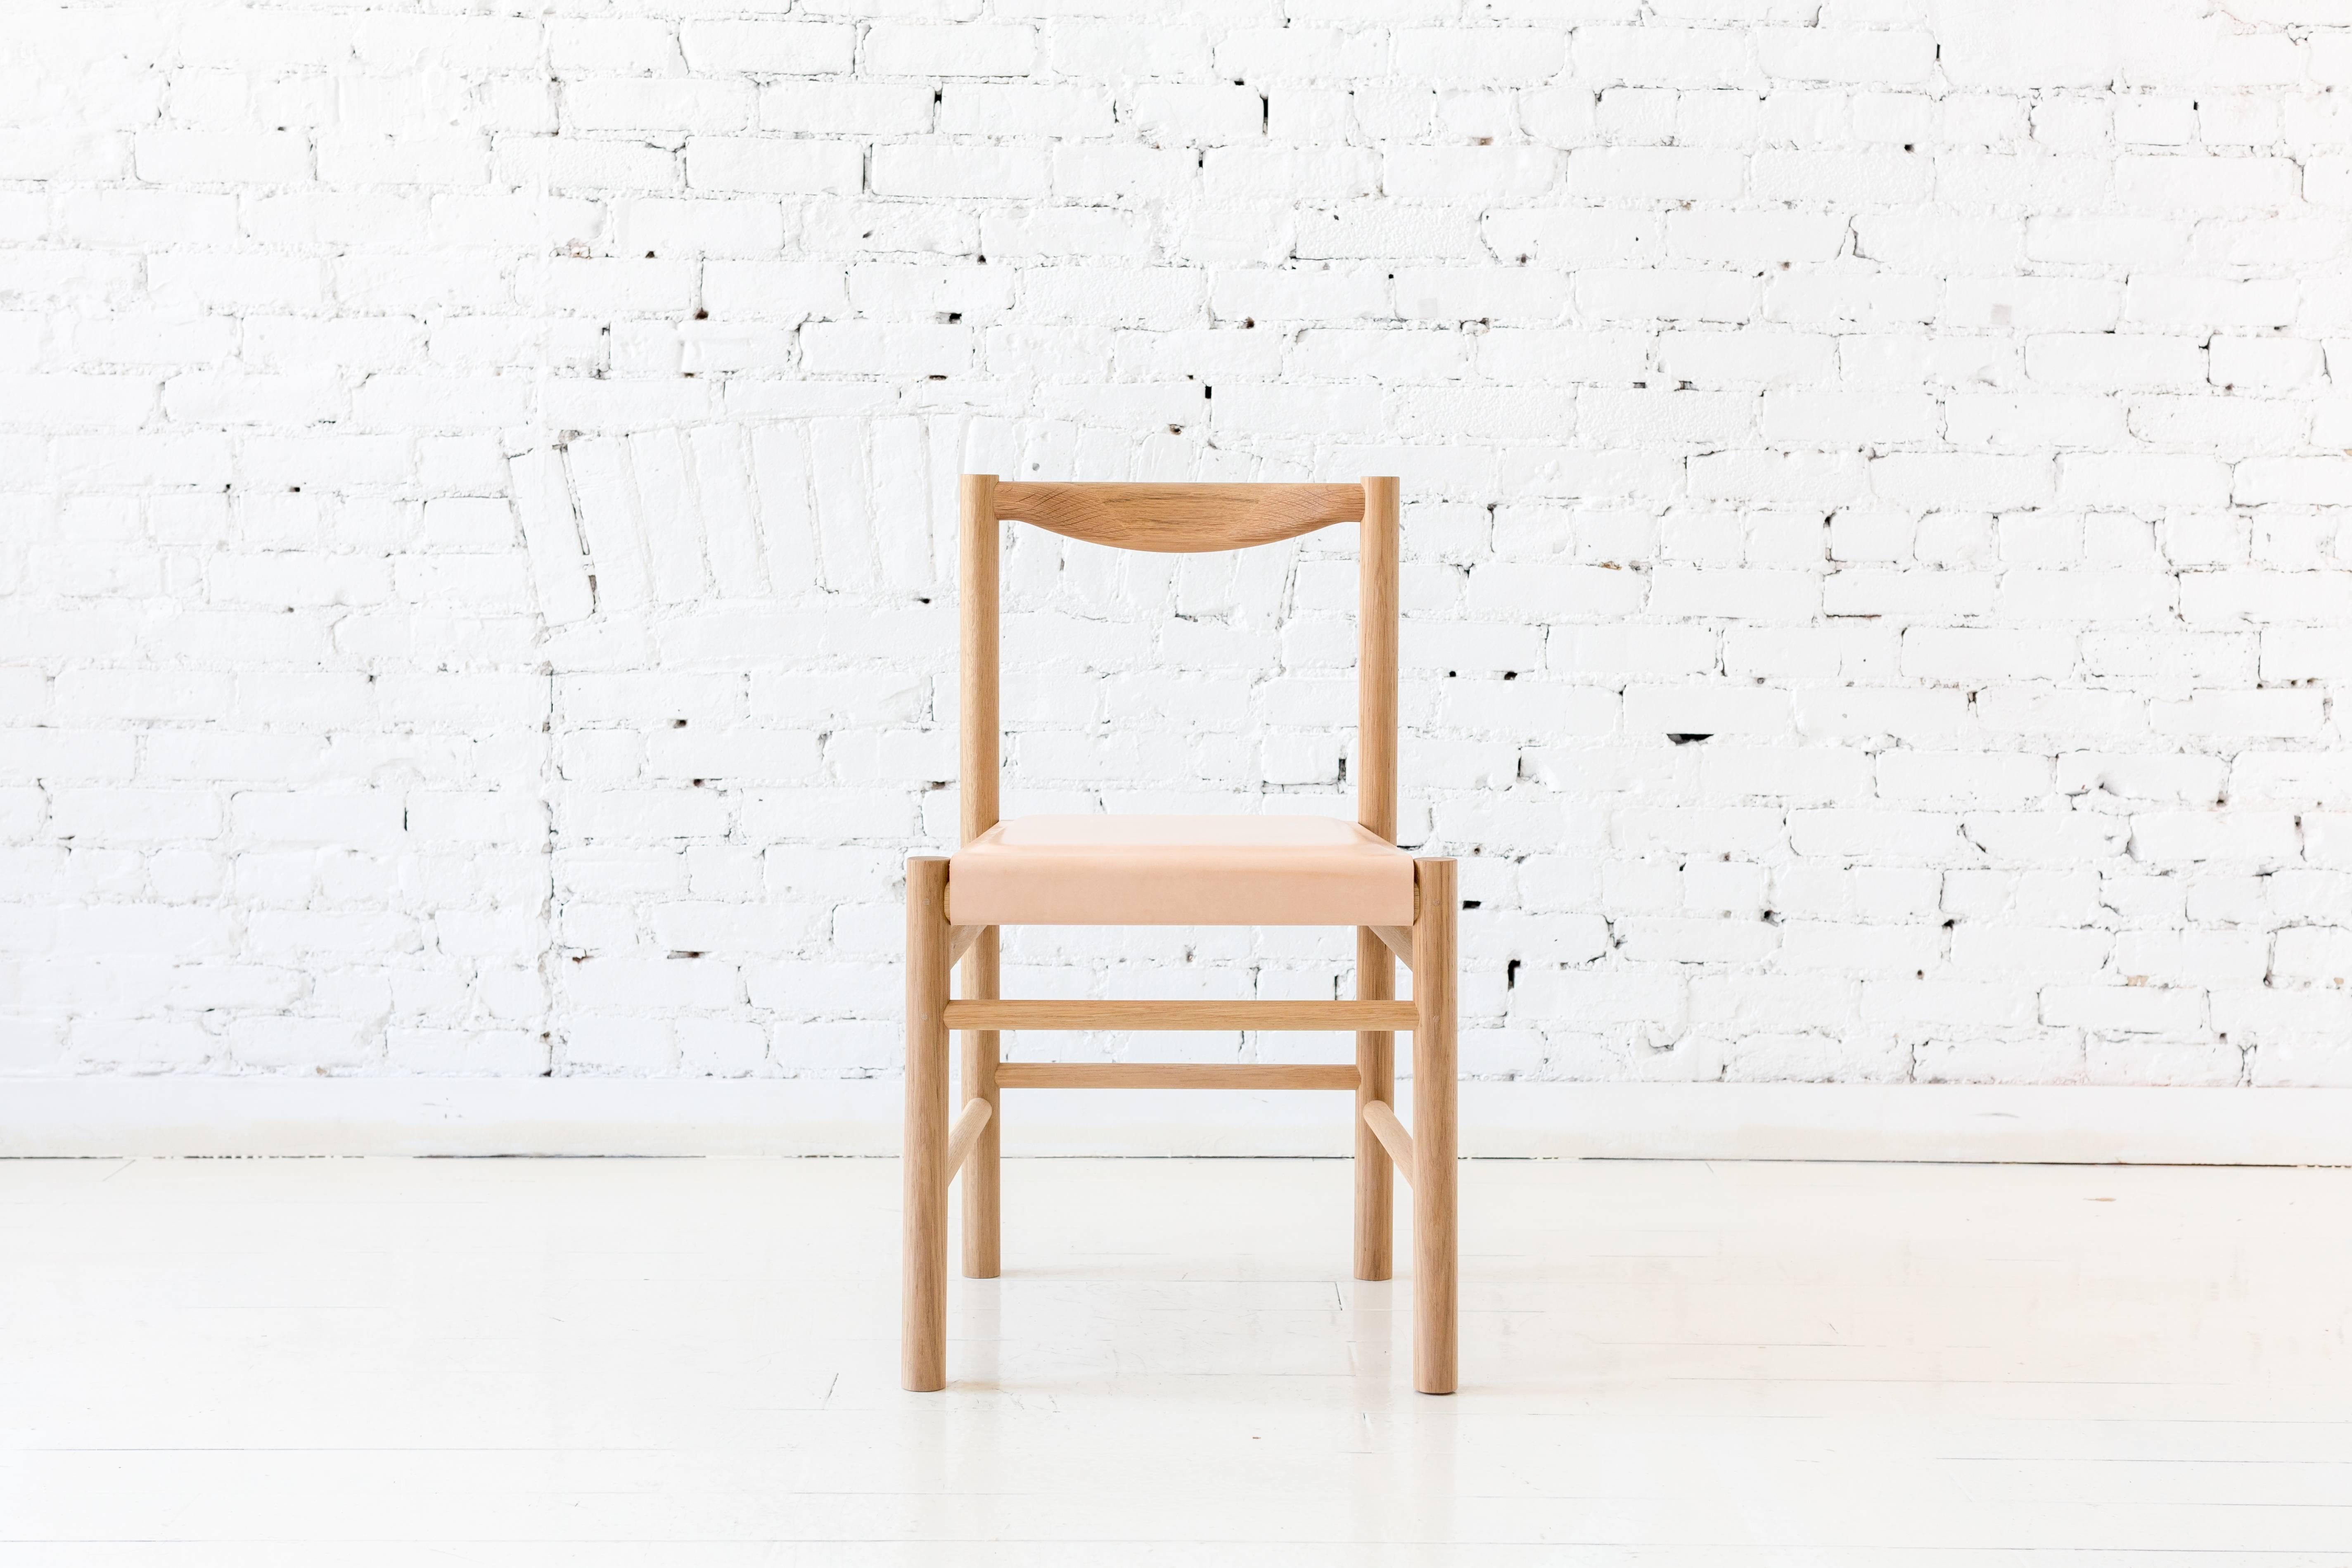 Chaise d'appoint en chêne blanc d'inspiration Shakers avec dossier profilé confortable. L'assise en bois est dotée d'un pad en cuir tanné végétal à profil bas. La simplicité de cette chaise la rend polyvalente pour fonctionner parfaitement dans de